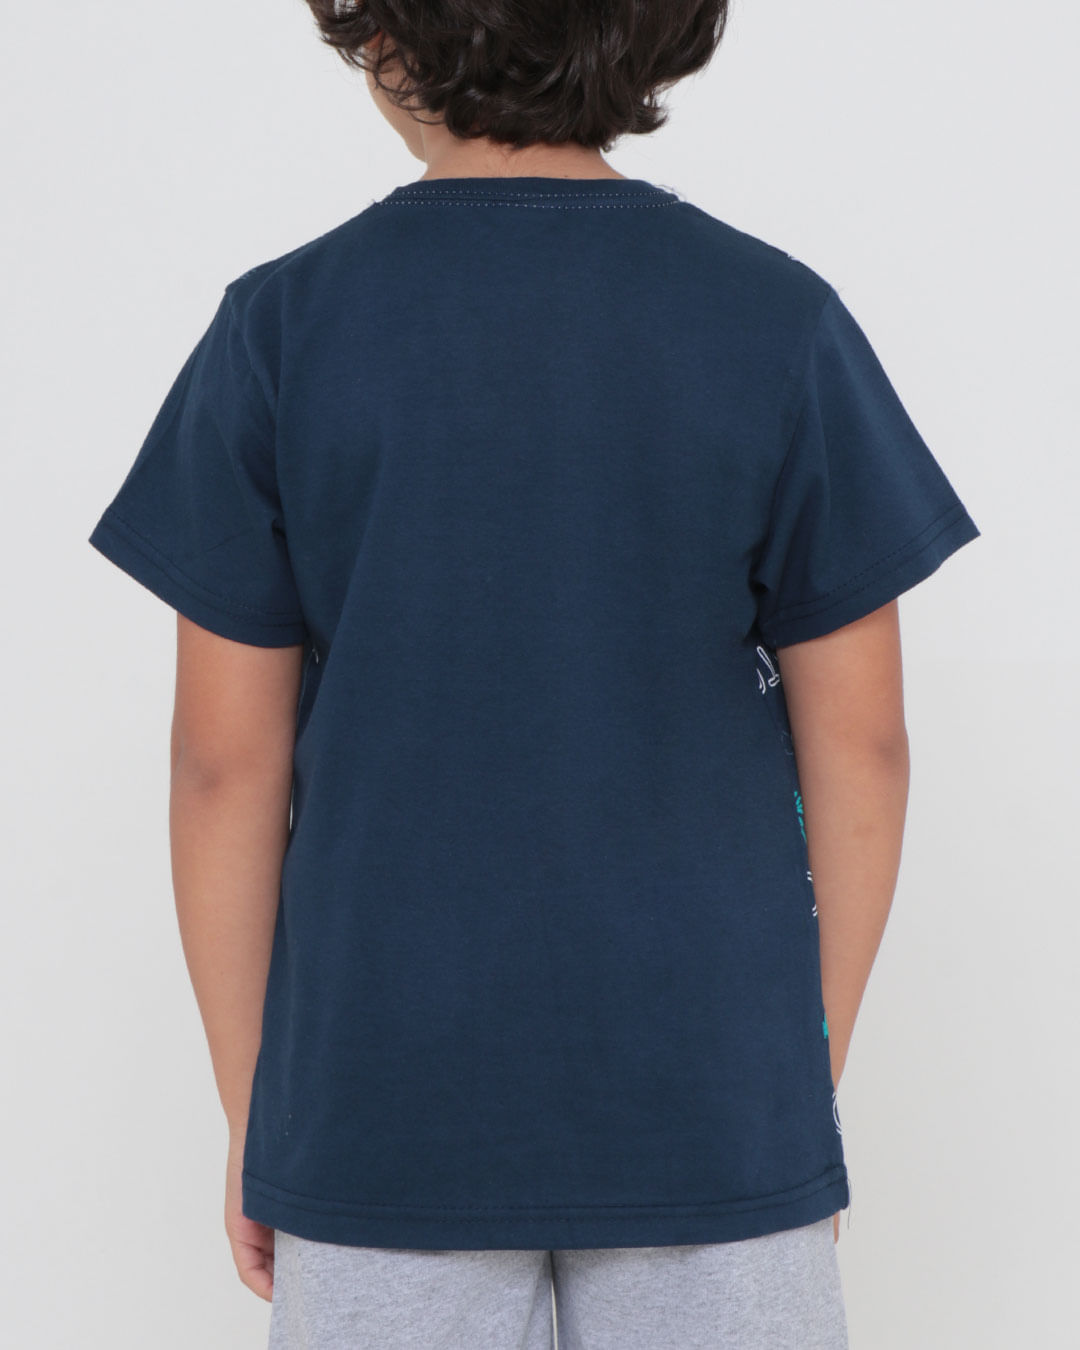 Camiseta-Infantil-Estampa-Tropical-Azul-Marinho-